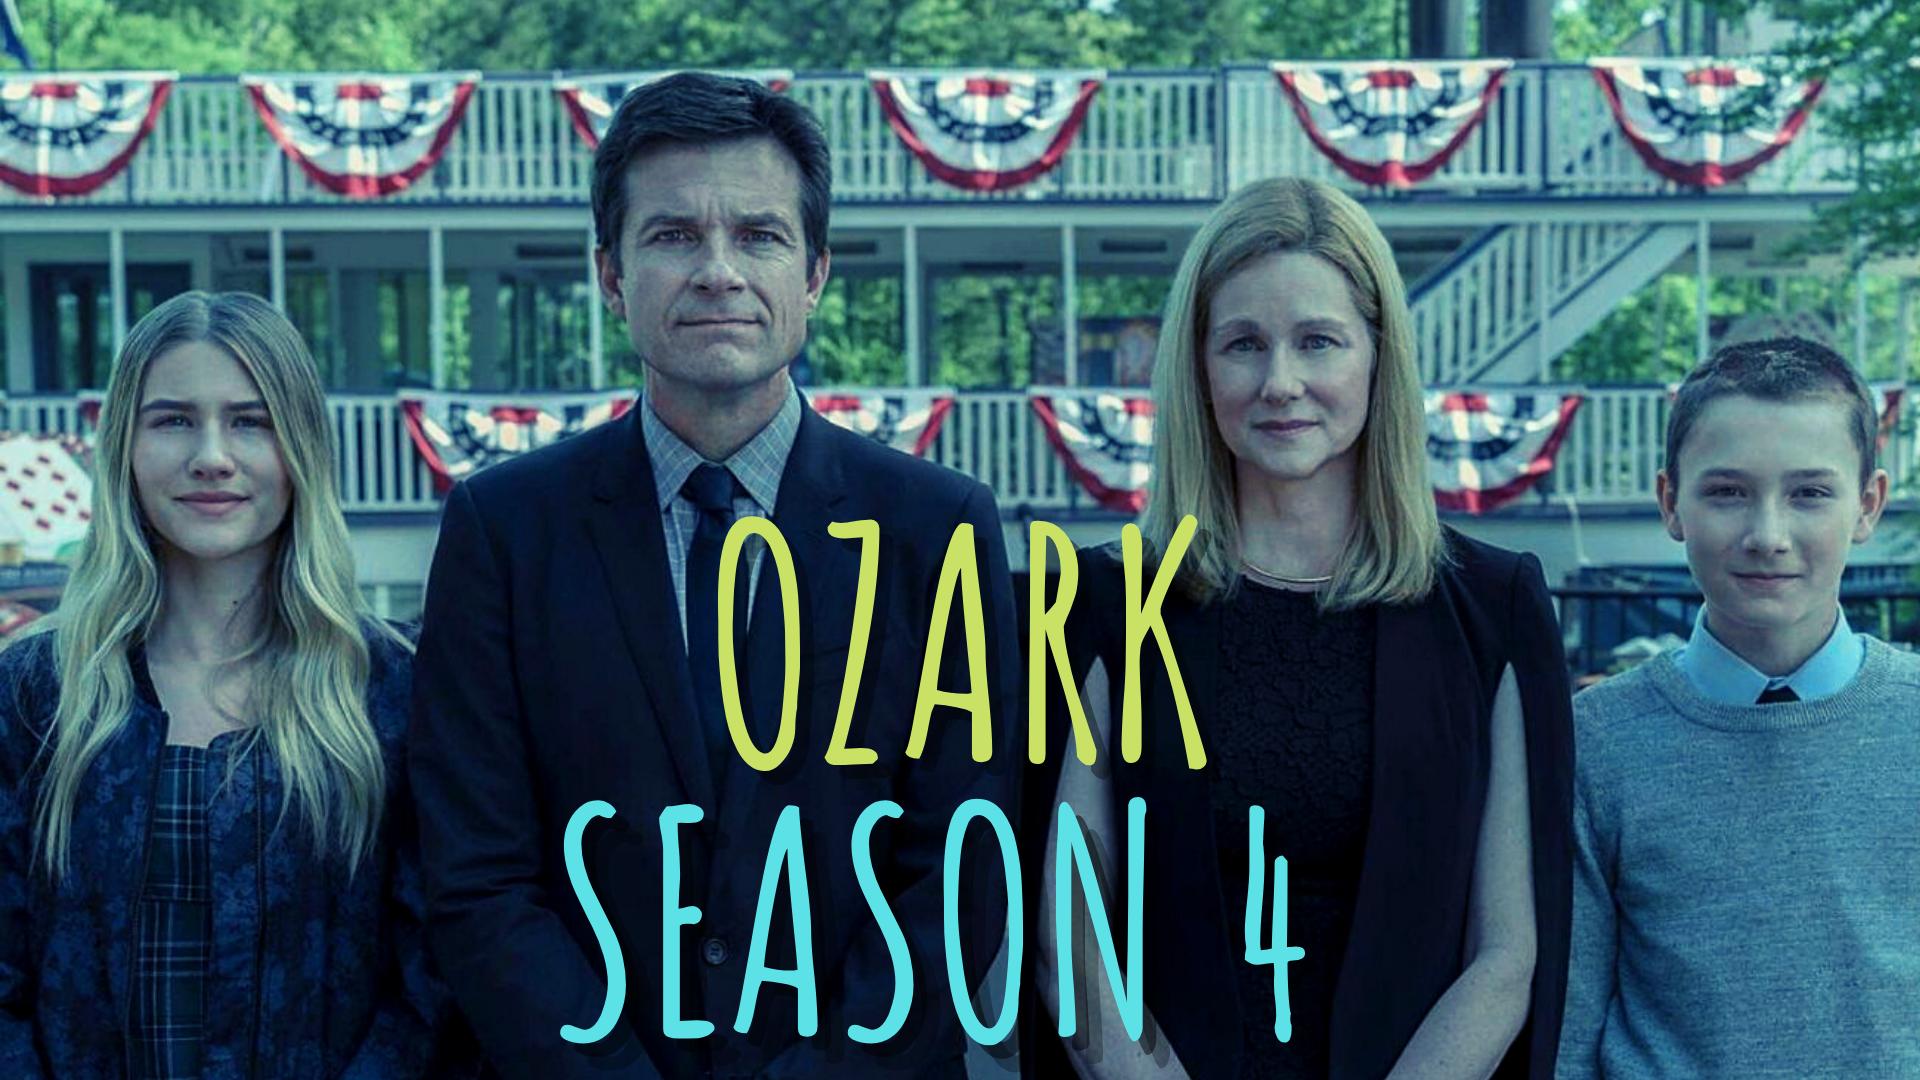 ozark season 4 , ozark season 4 release date, ozark season 4 release date 2021 netflix, ozark season 4 release date nz,